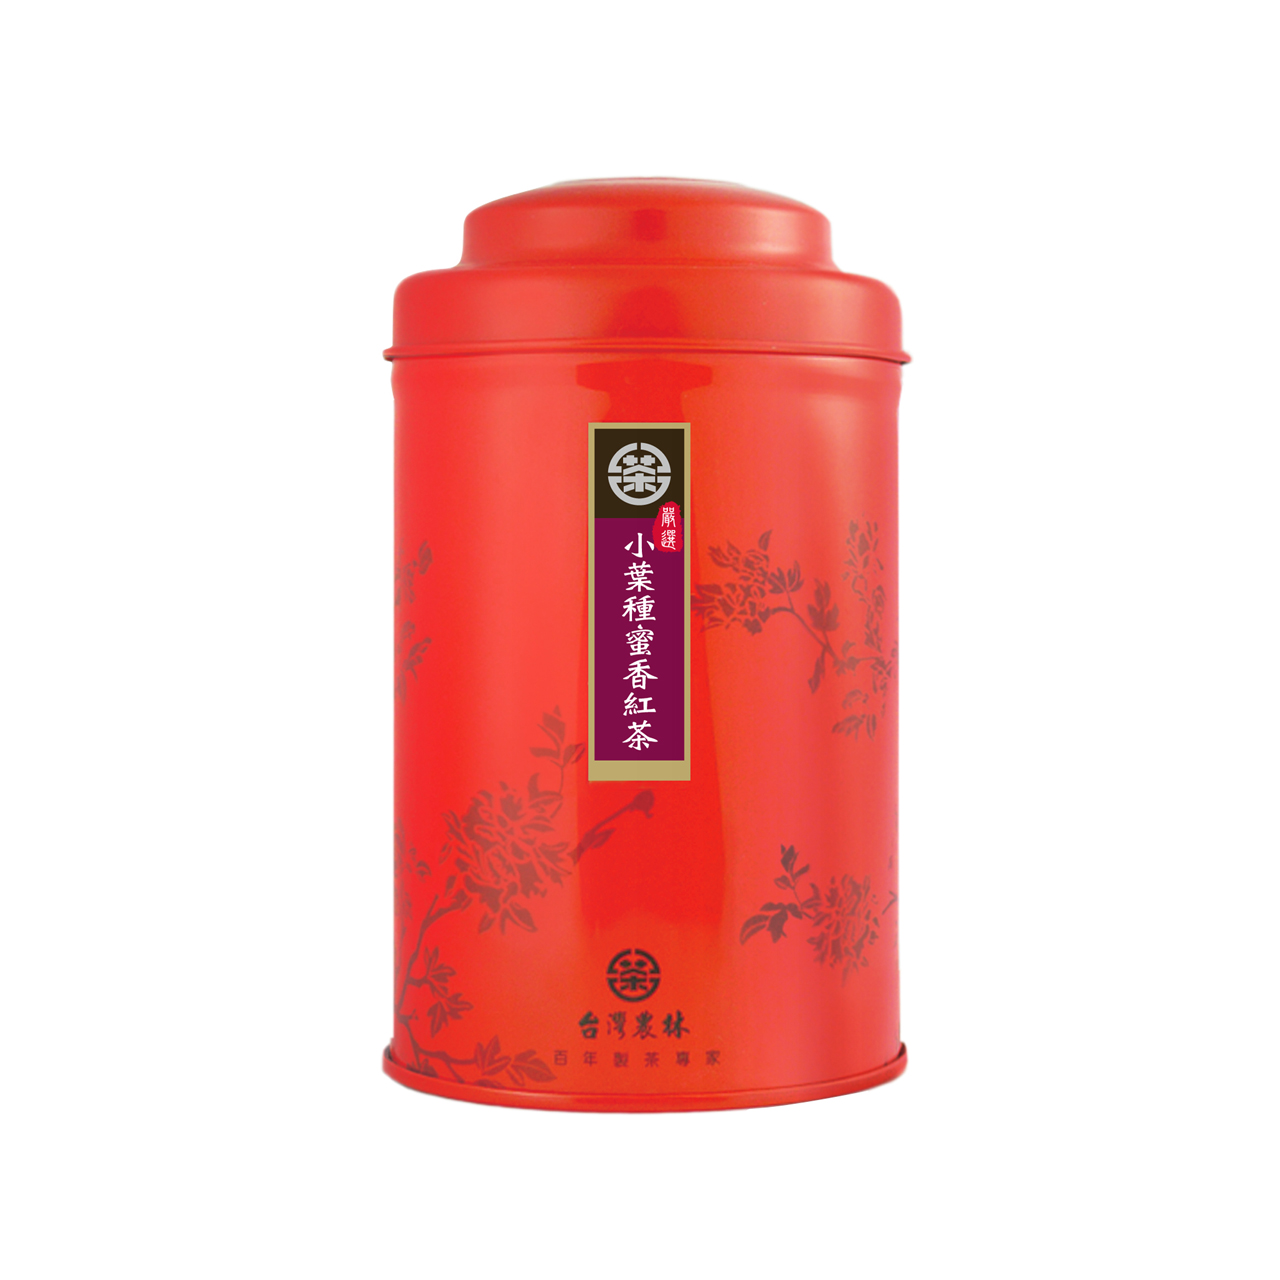 嚴選小葉種蜜香紅茶(50g)